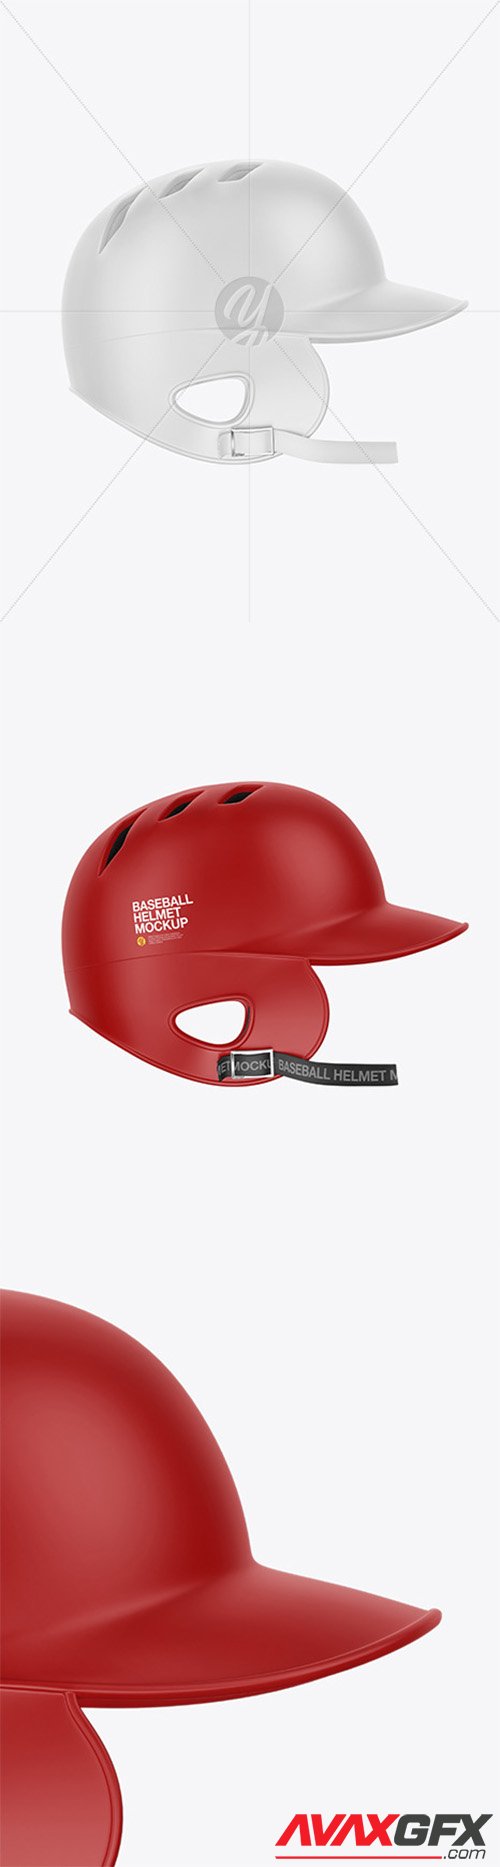 Matte Baseball Helmet Mockup 49146